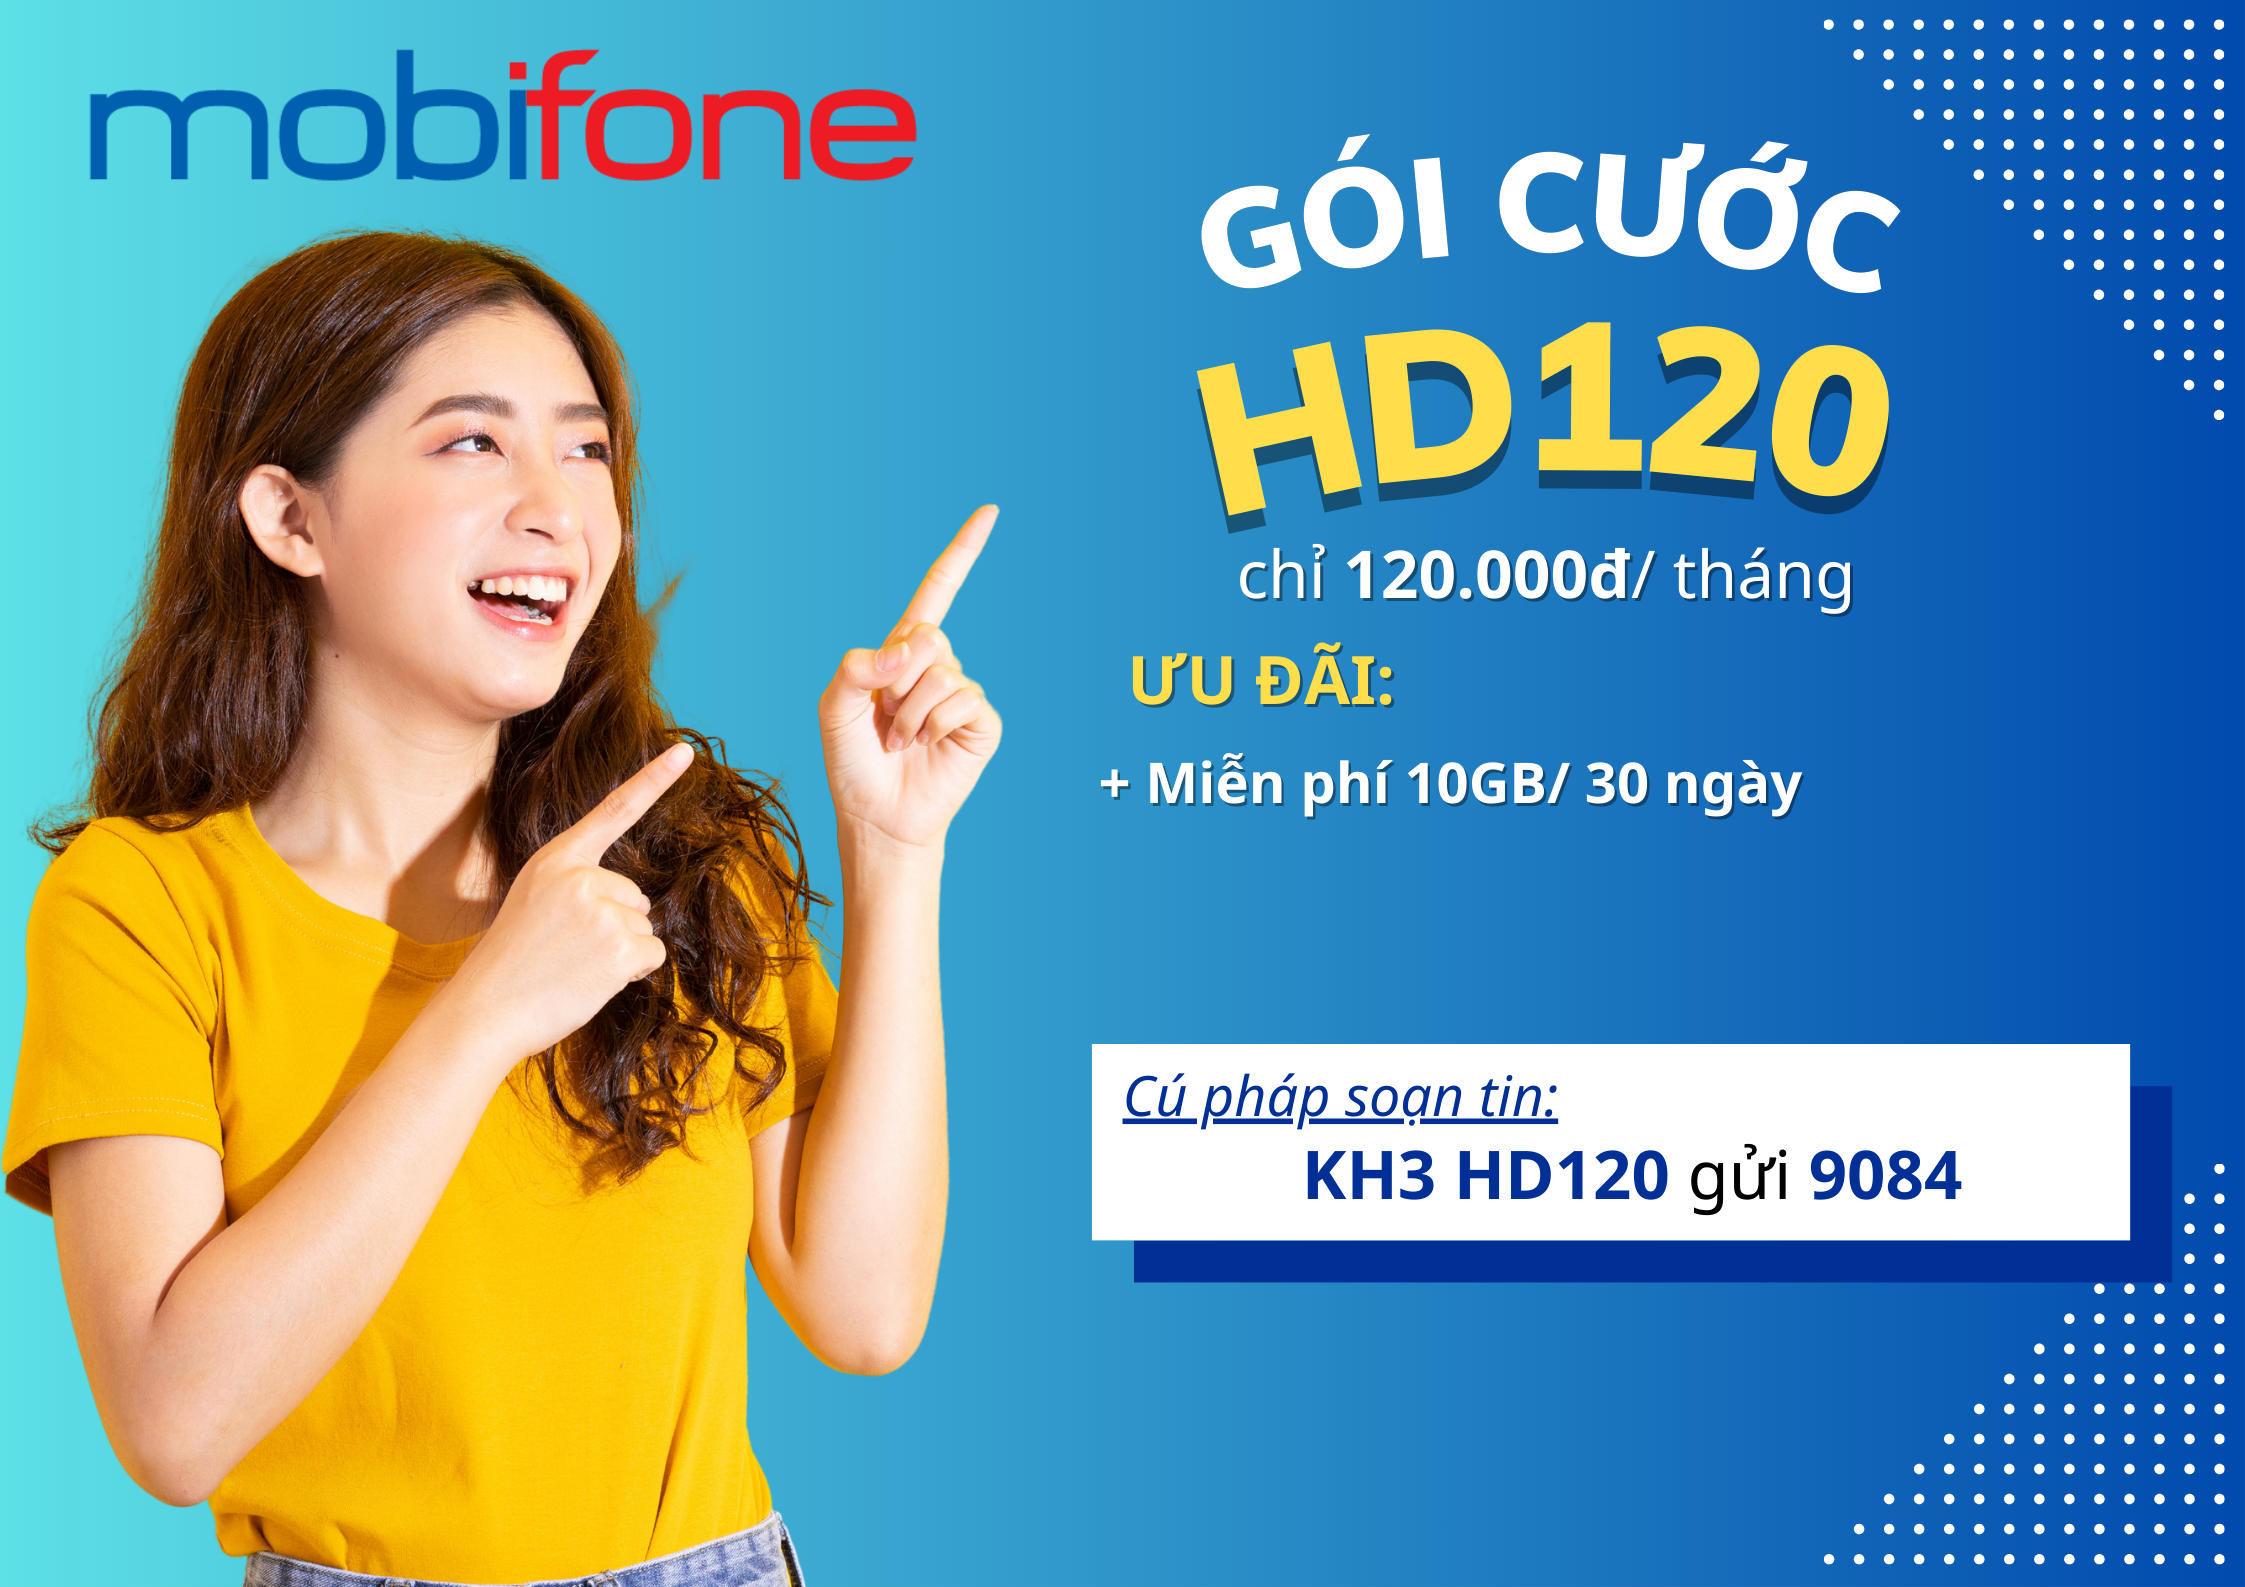 huong-dan-dang-ky-goi-cuoc-hd120-mobifone